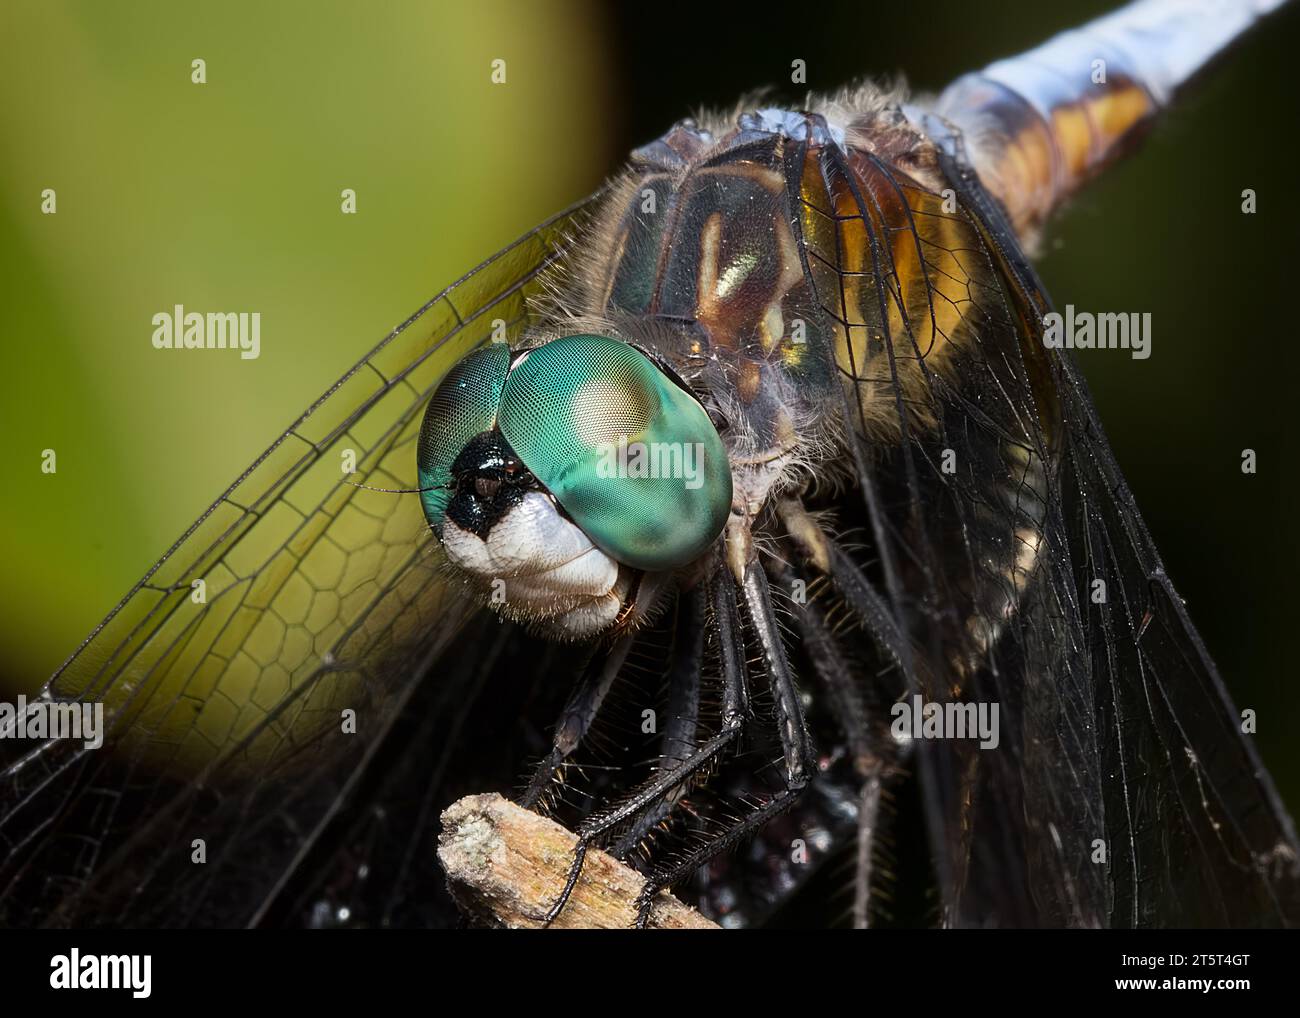 Extrême gros plan ou macro d'une libellule de Dasher Bleu très colorée (Pachydipax longipennis) perchée sur une petite brindille dans le nord du Minnesota USA Banque D'Images